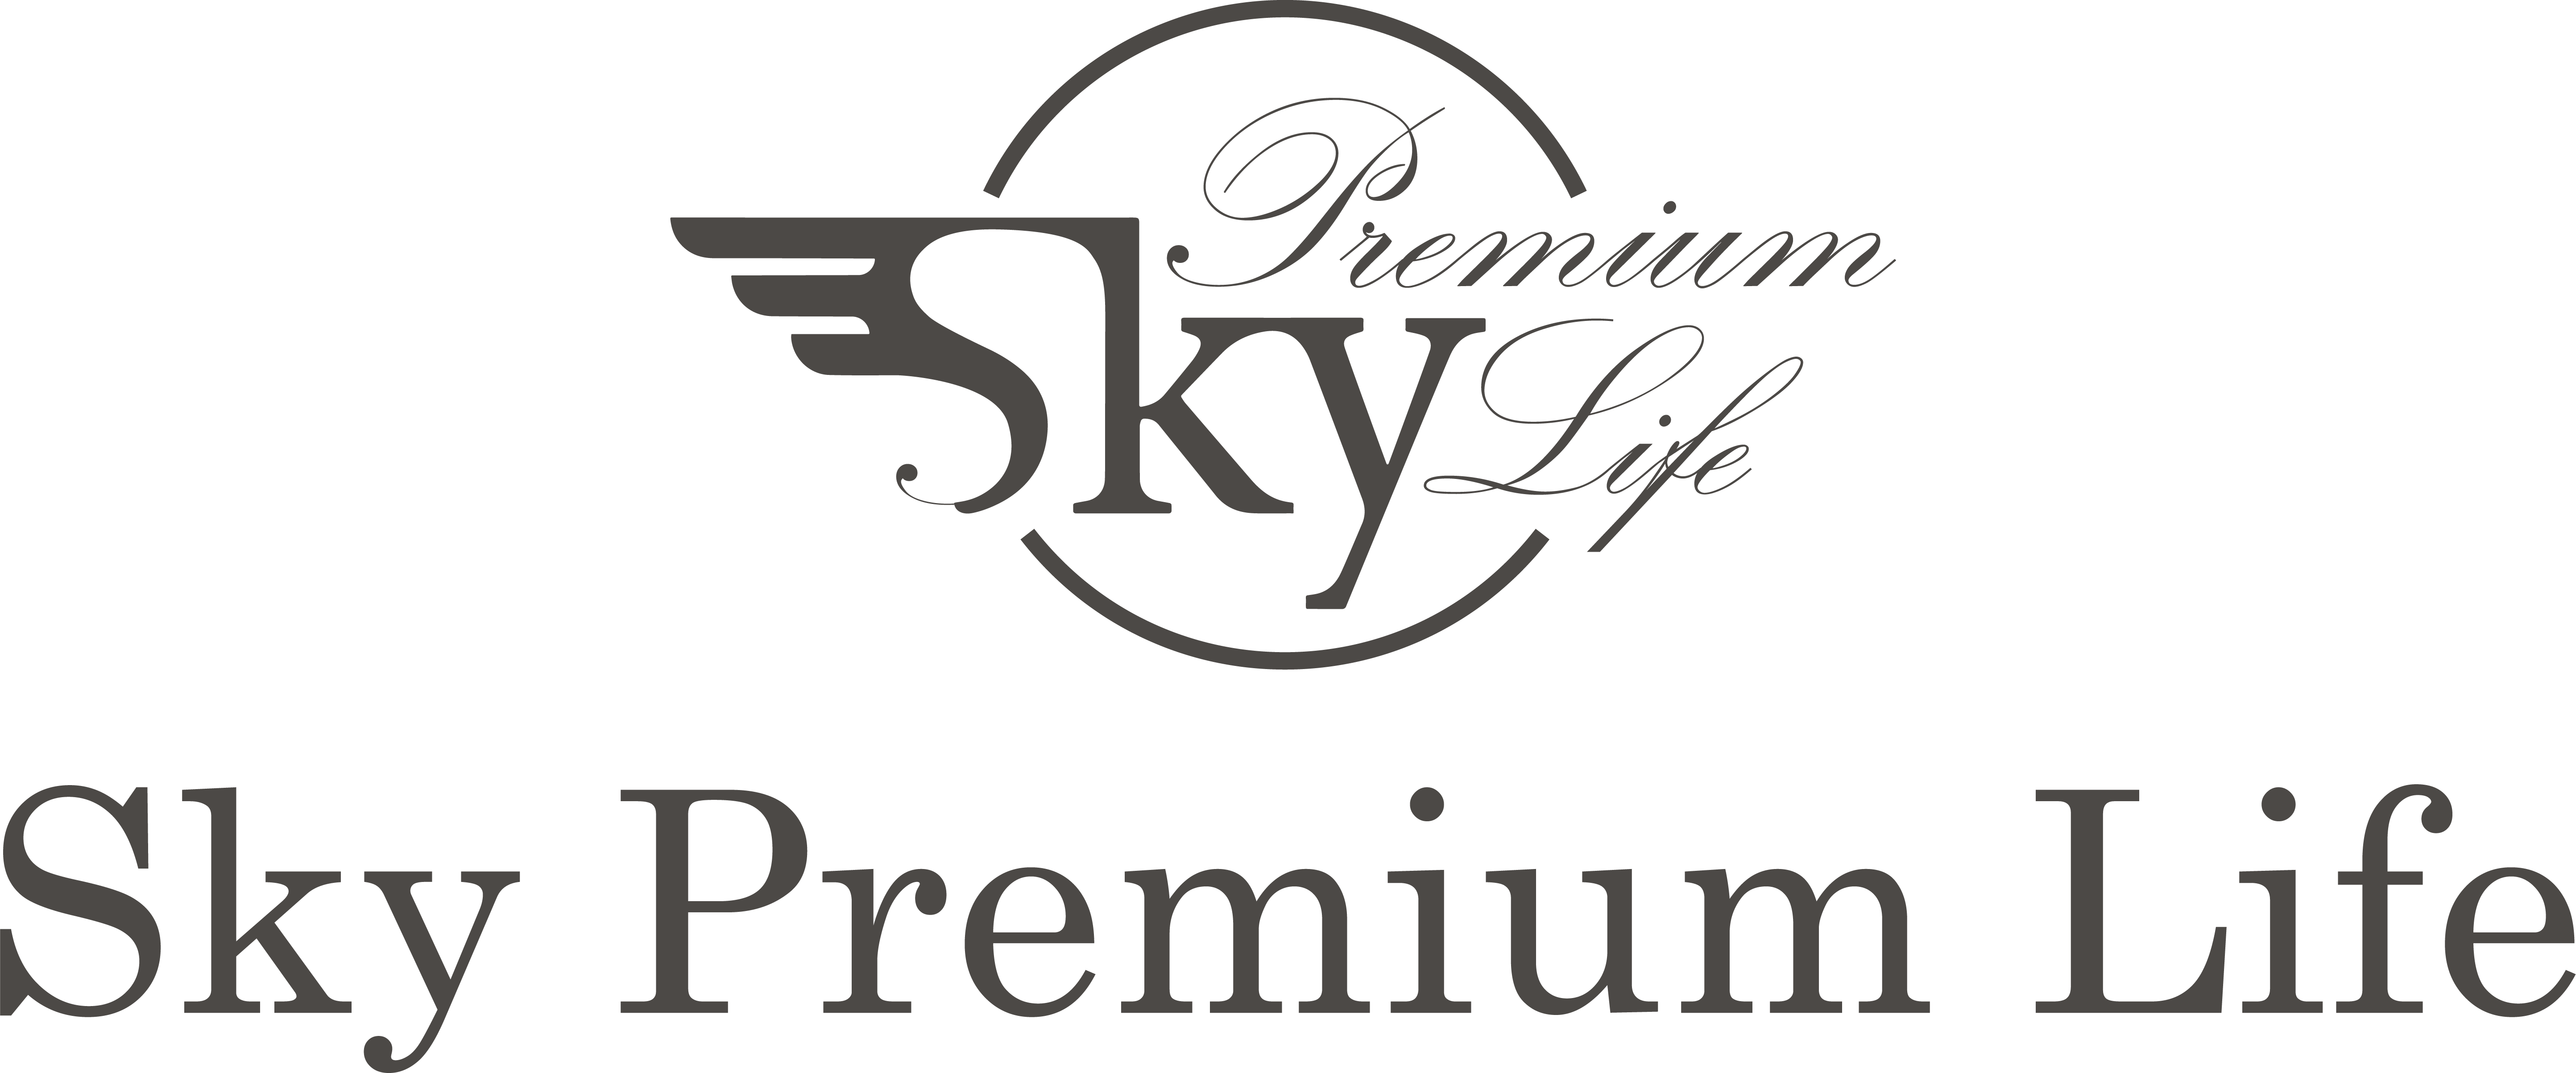 Sky Life Premium